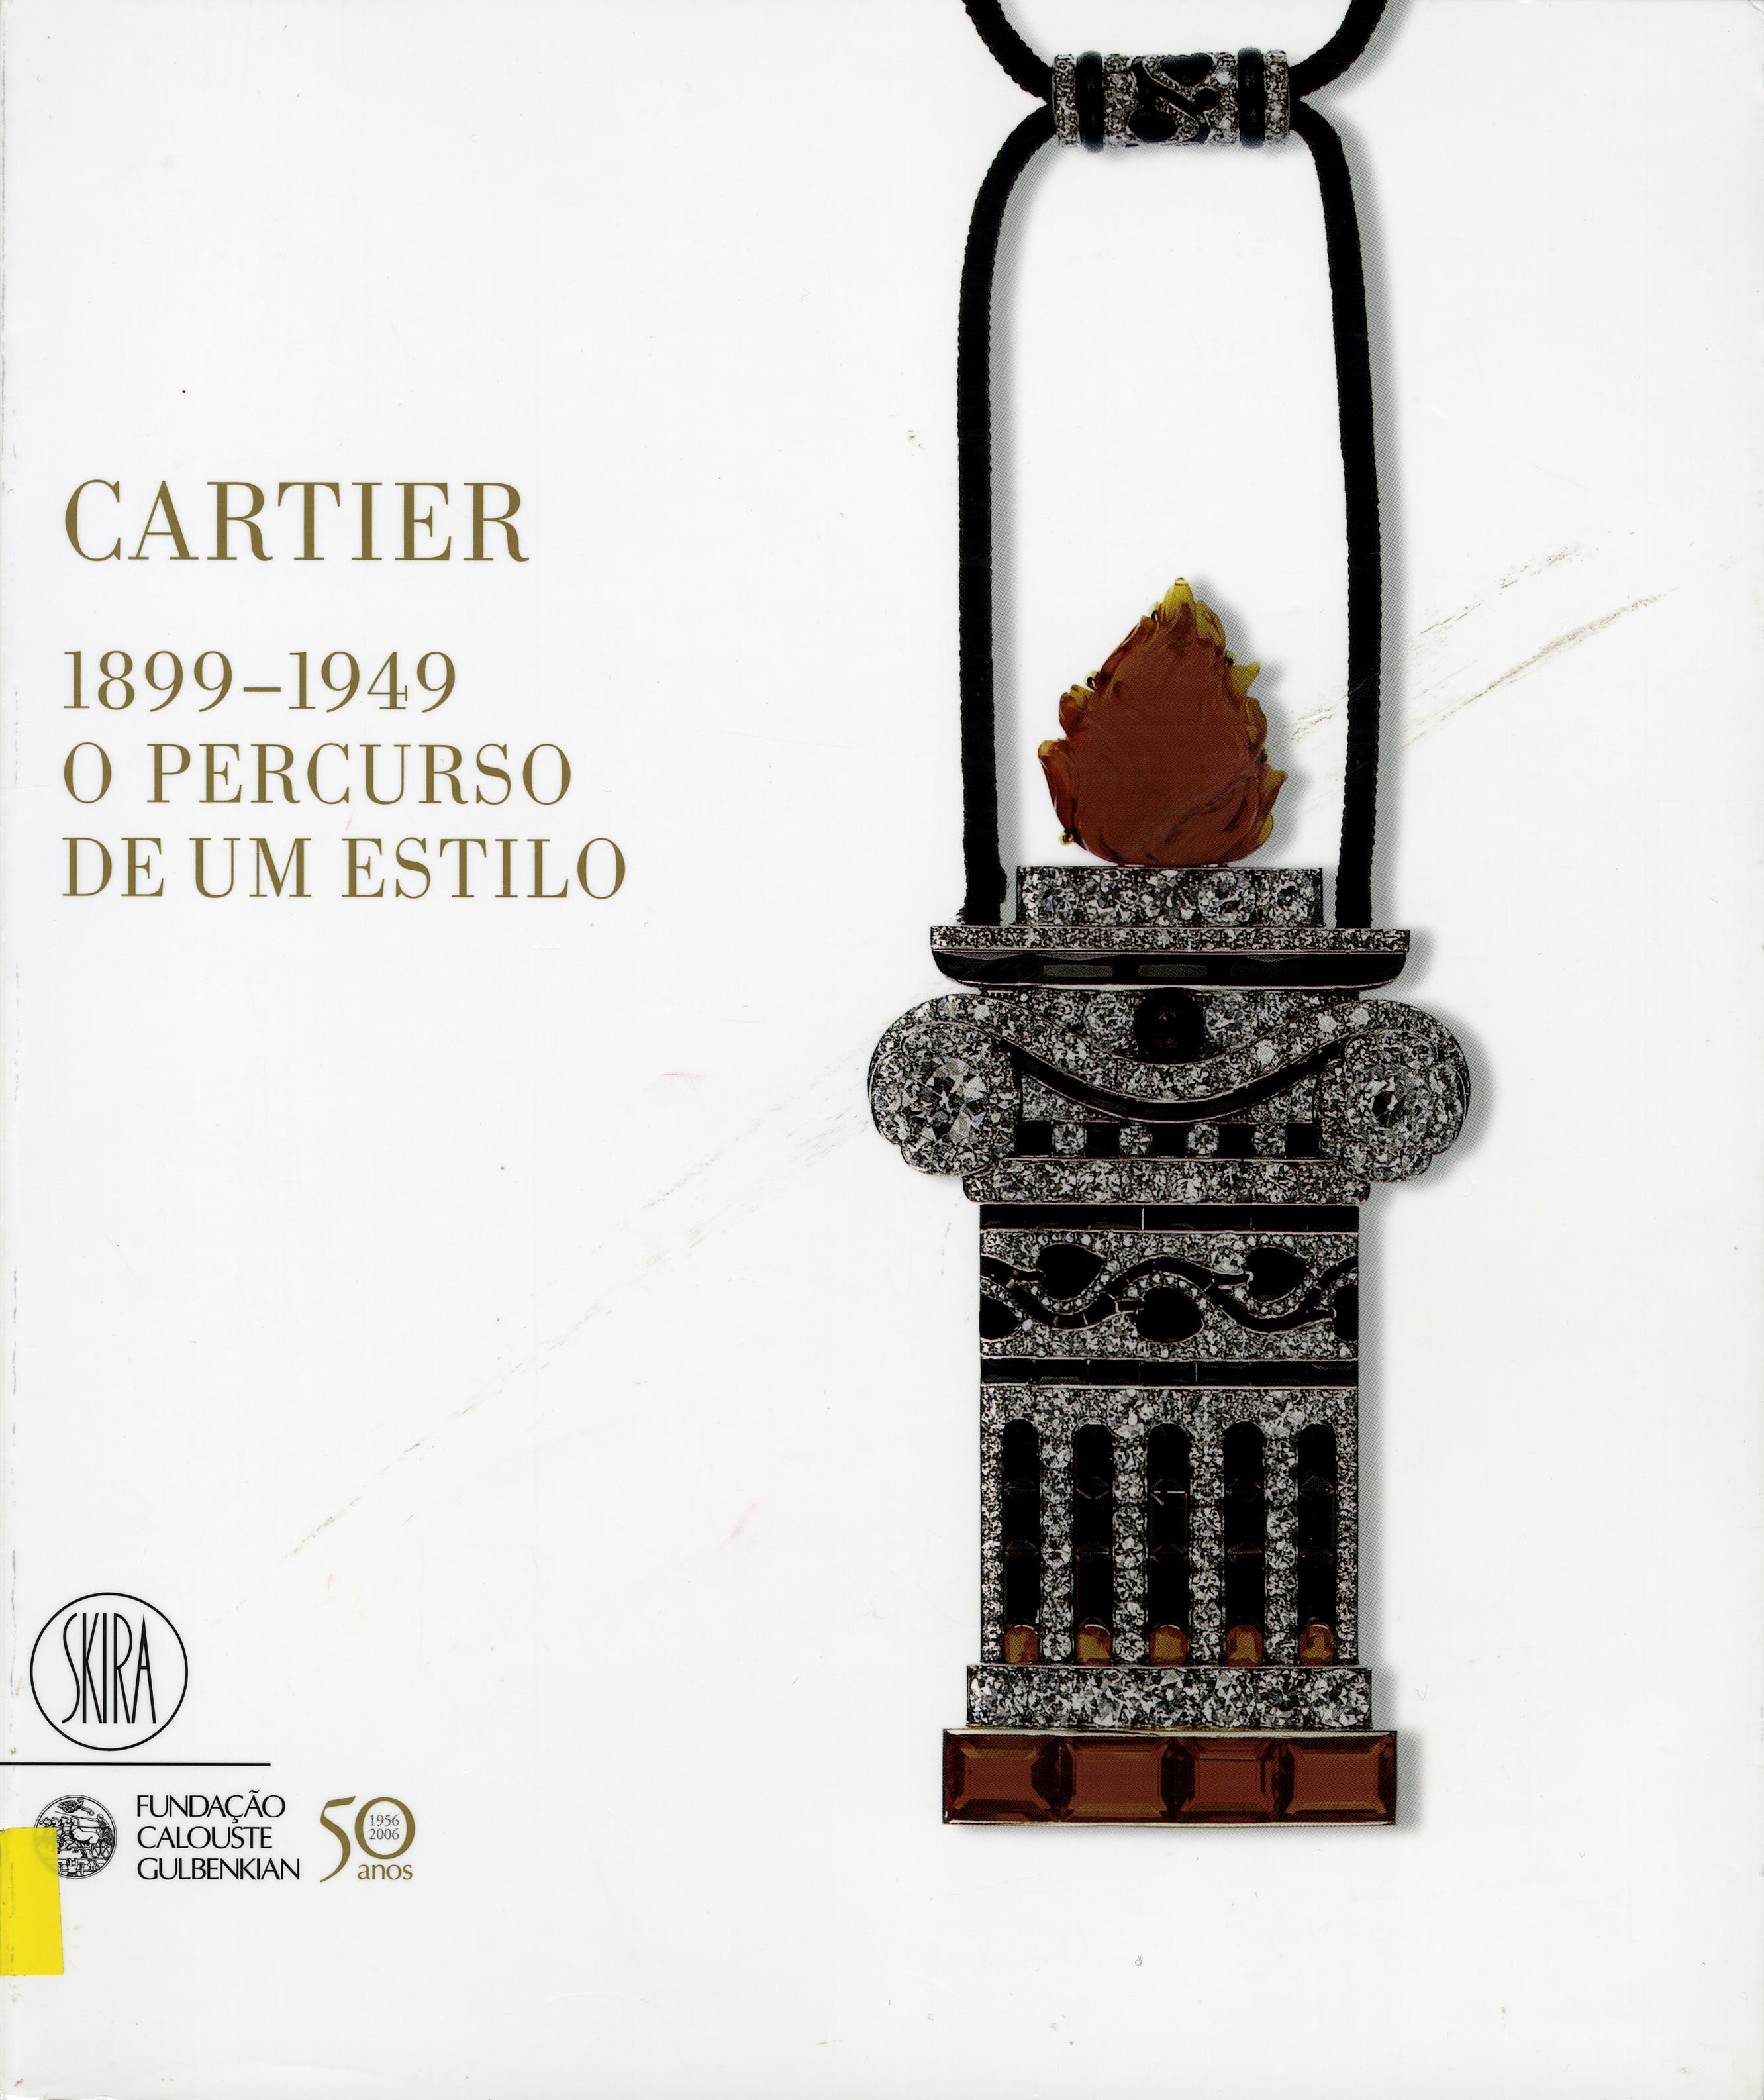 Cartier, 1899 – 1949. O Percurso de um Estilo